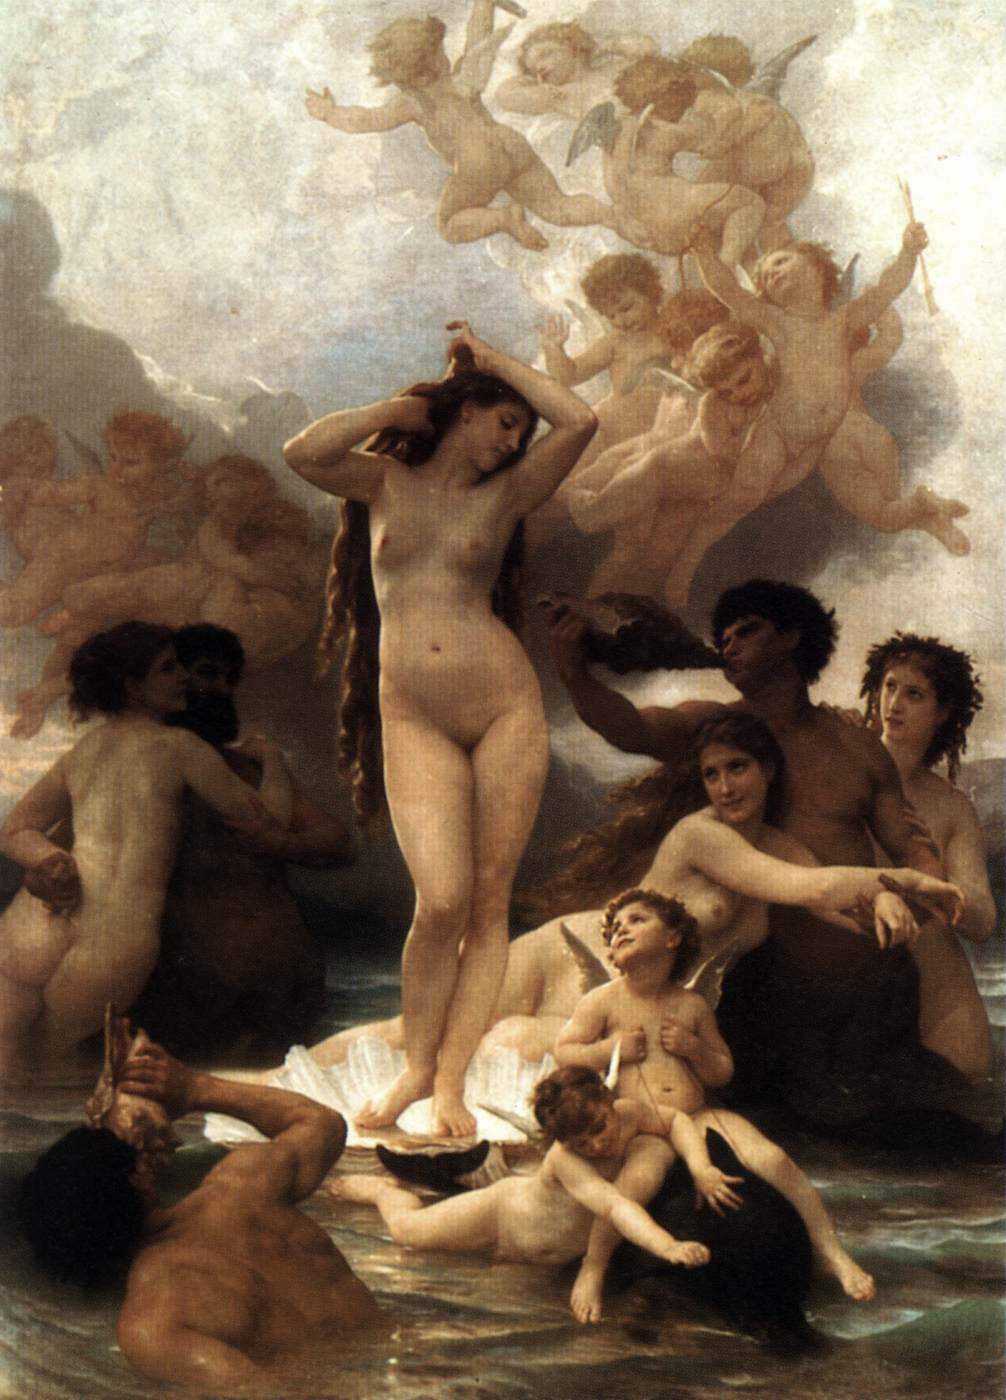 Die Geburt von Venus